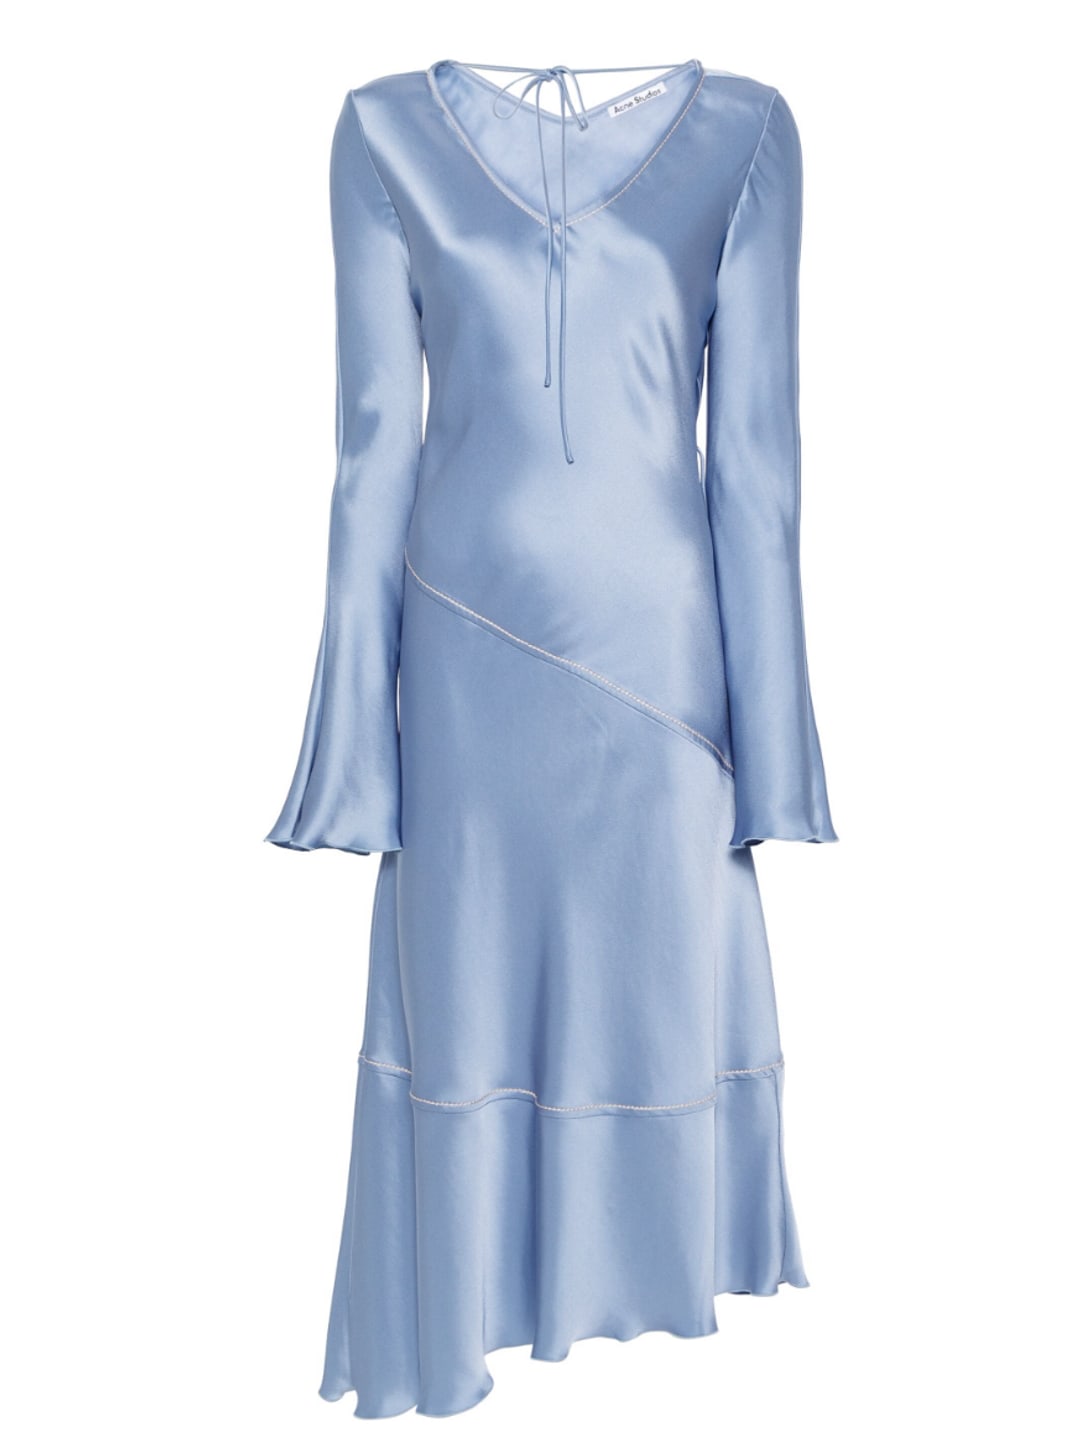 Acne flowy blue dress 